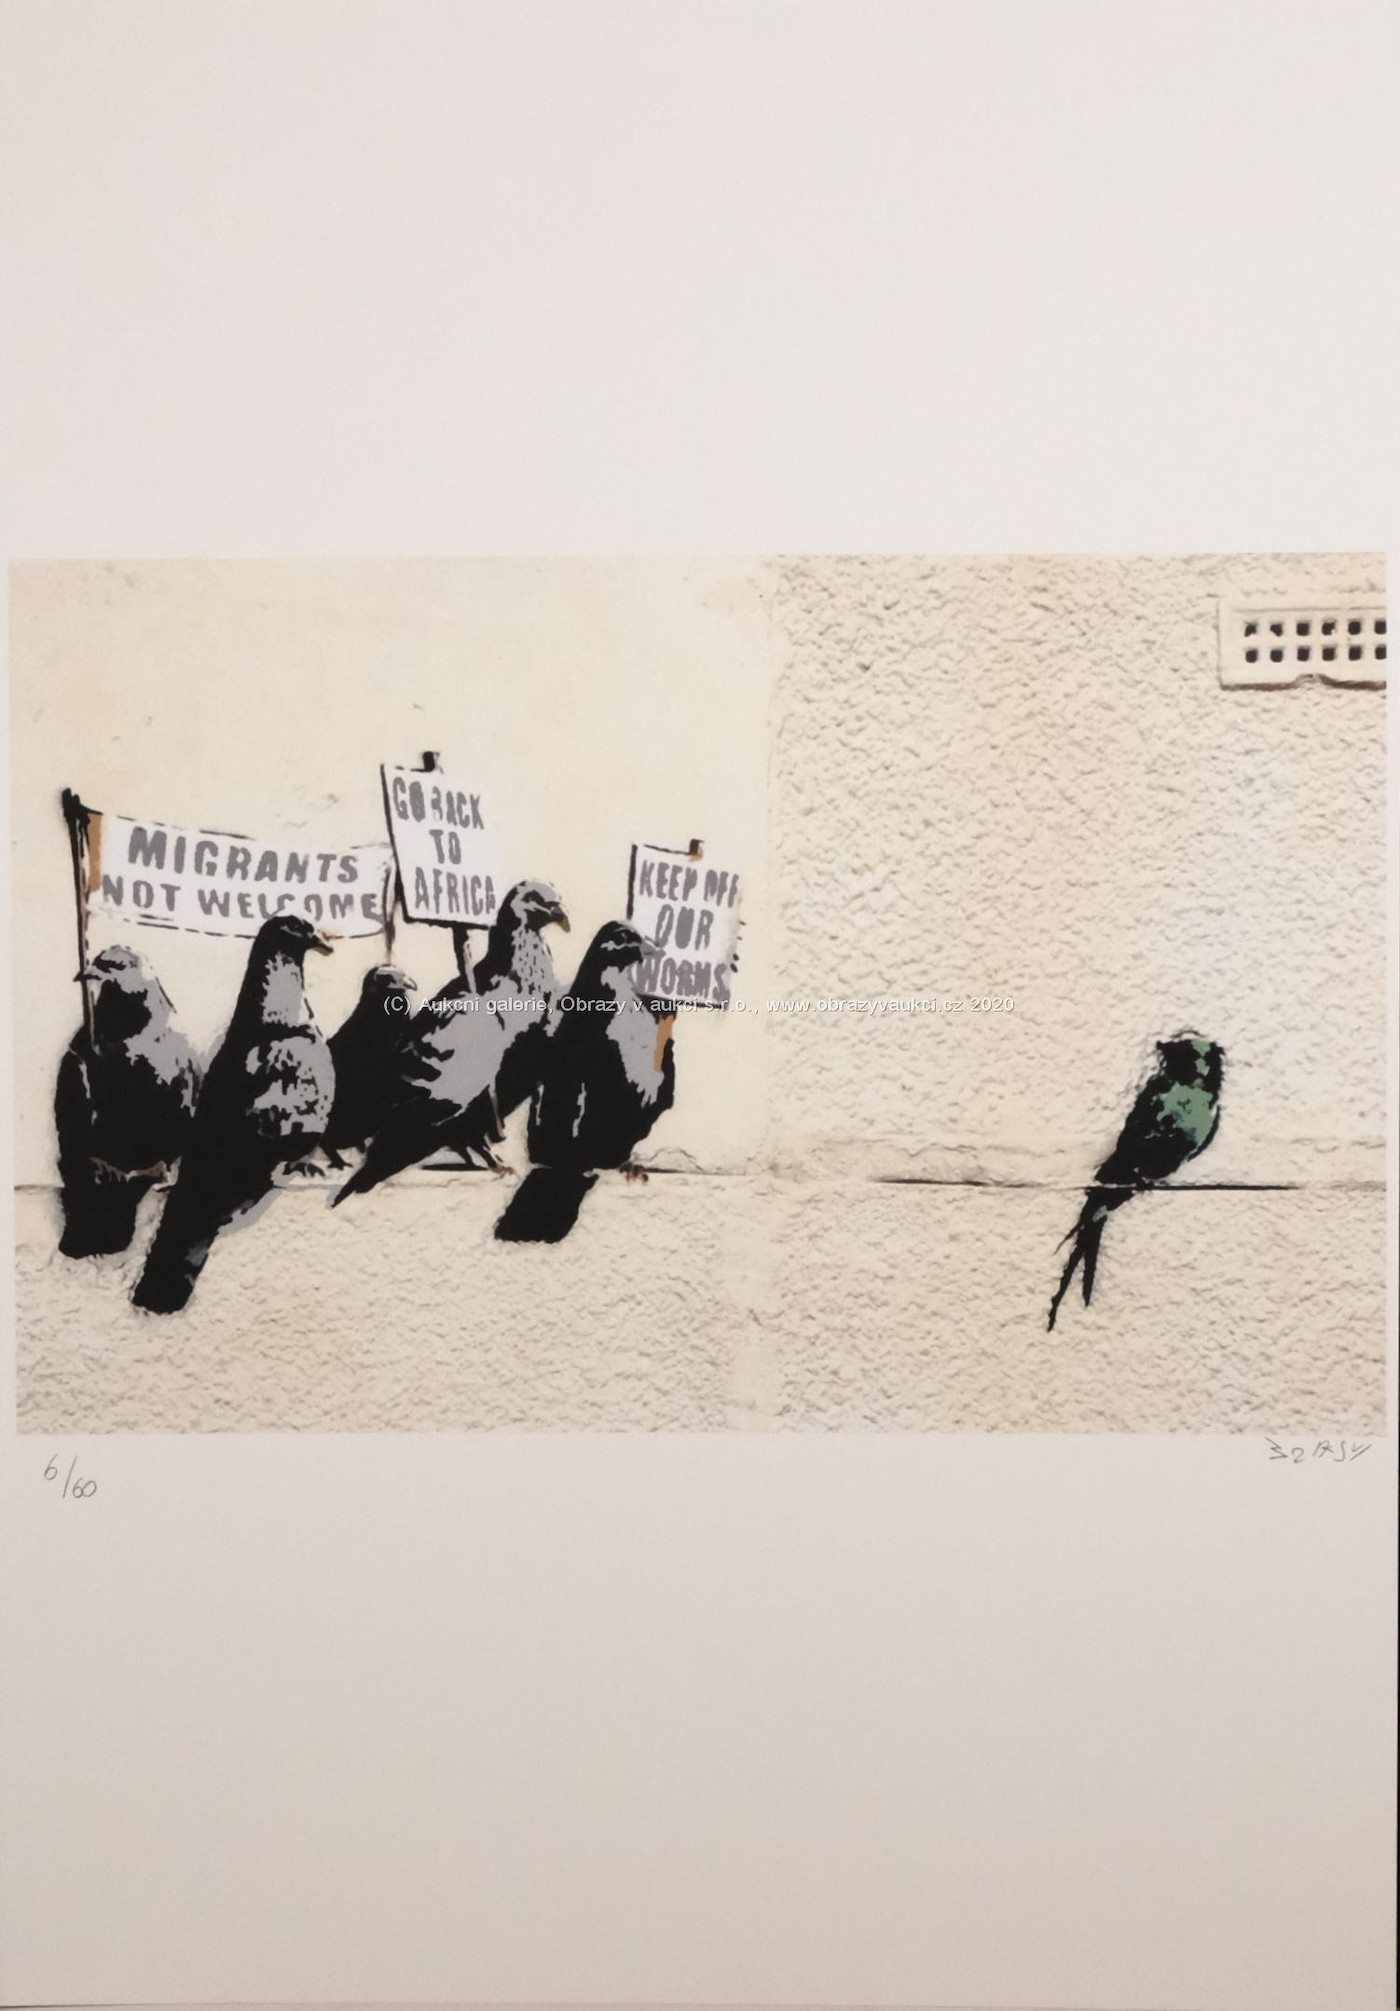 Banksy - Migrants not welcome